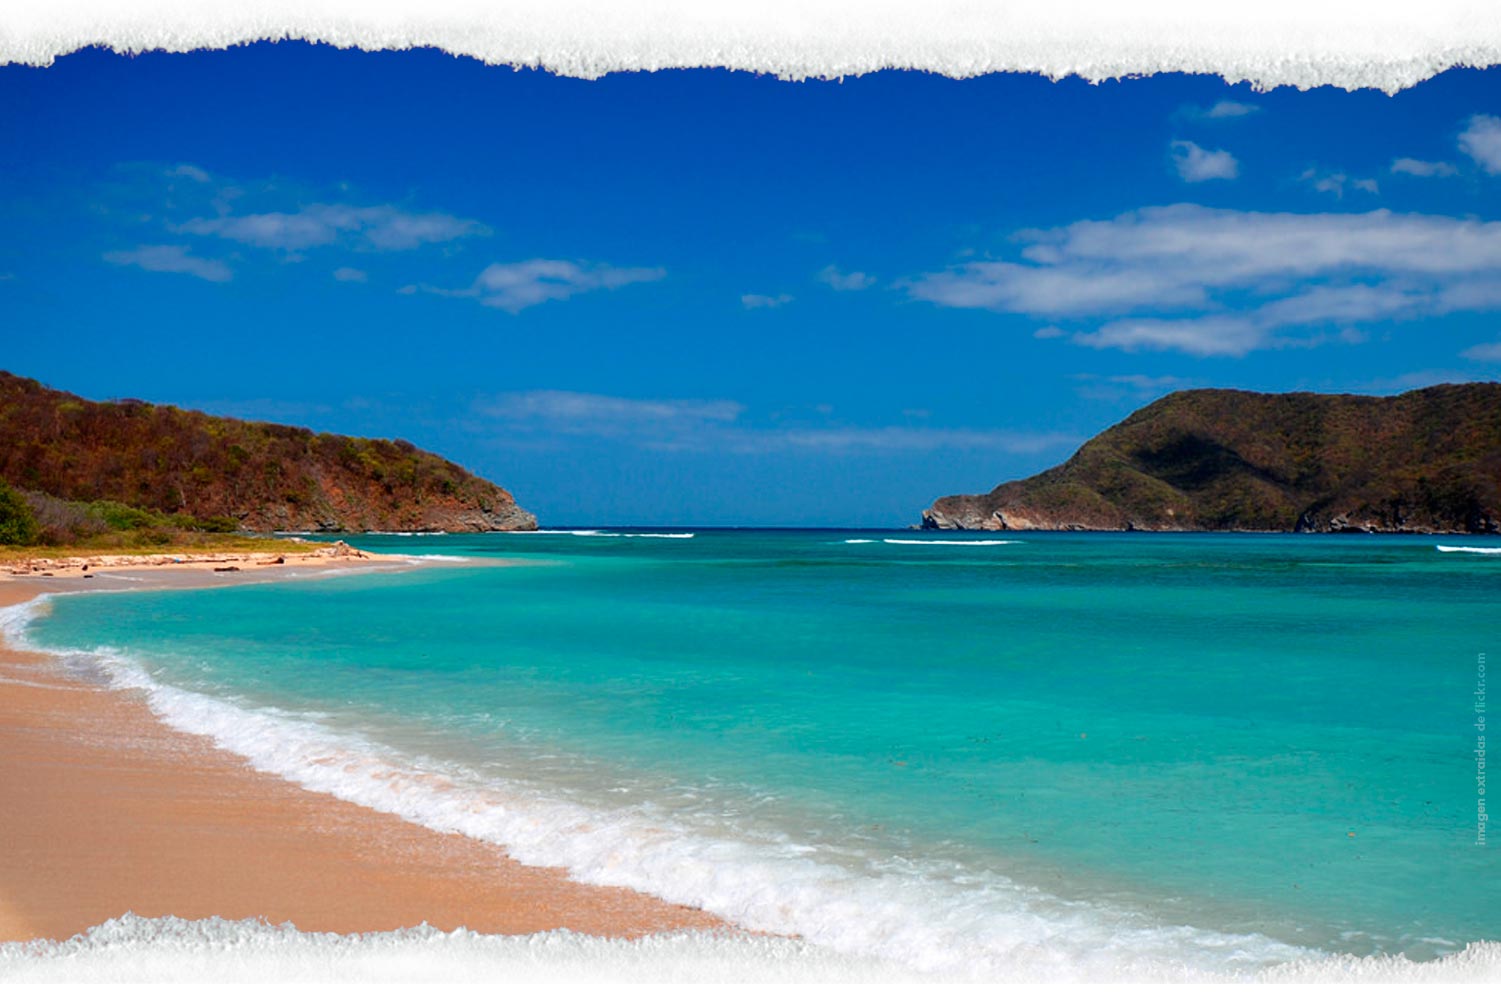 playa-chengue-caribe-colombiano-playas-santa-marta-guajira-expotur